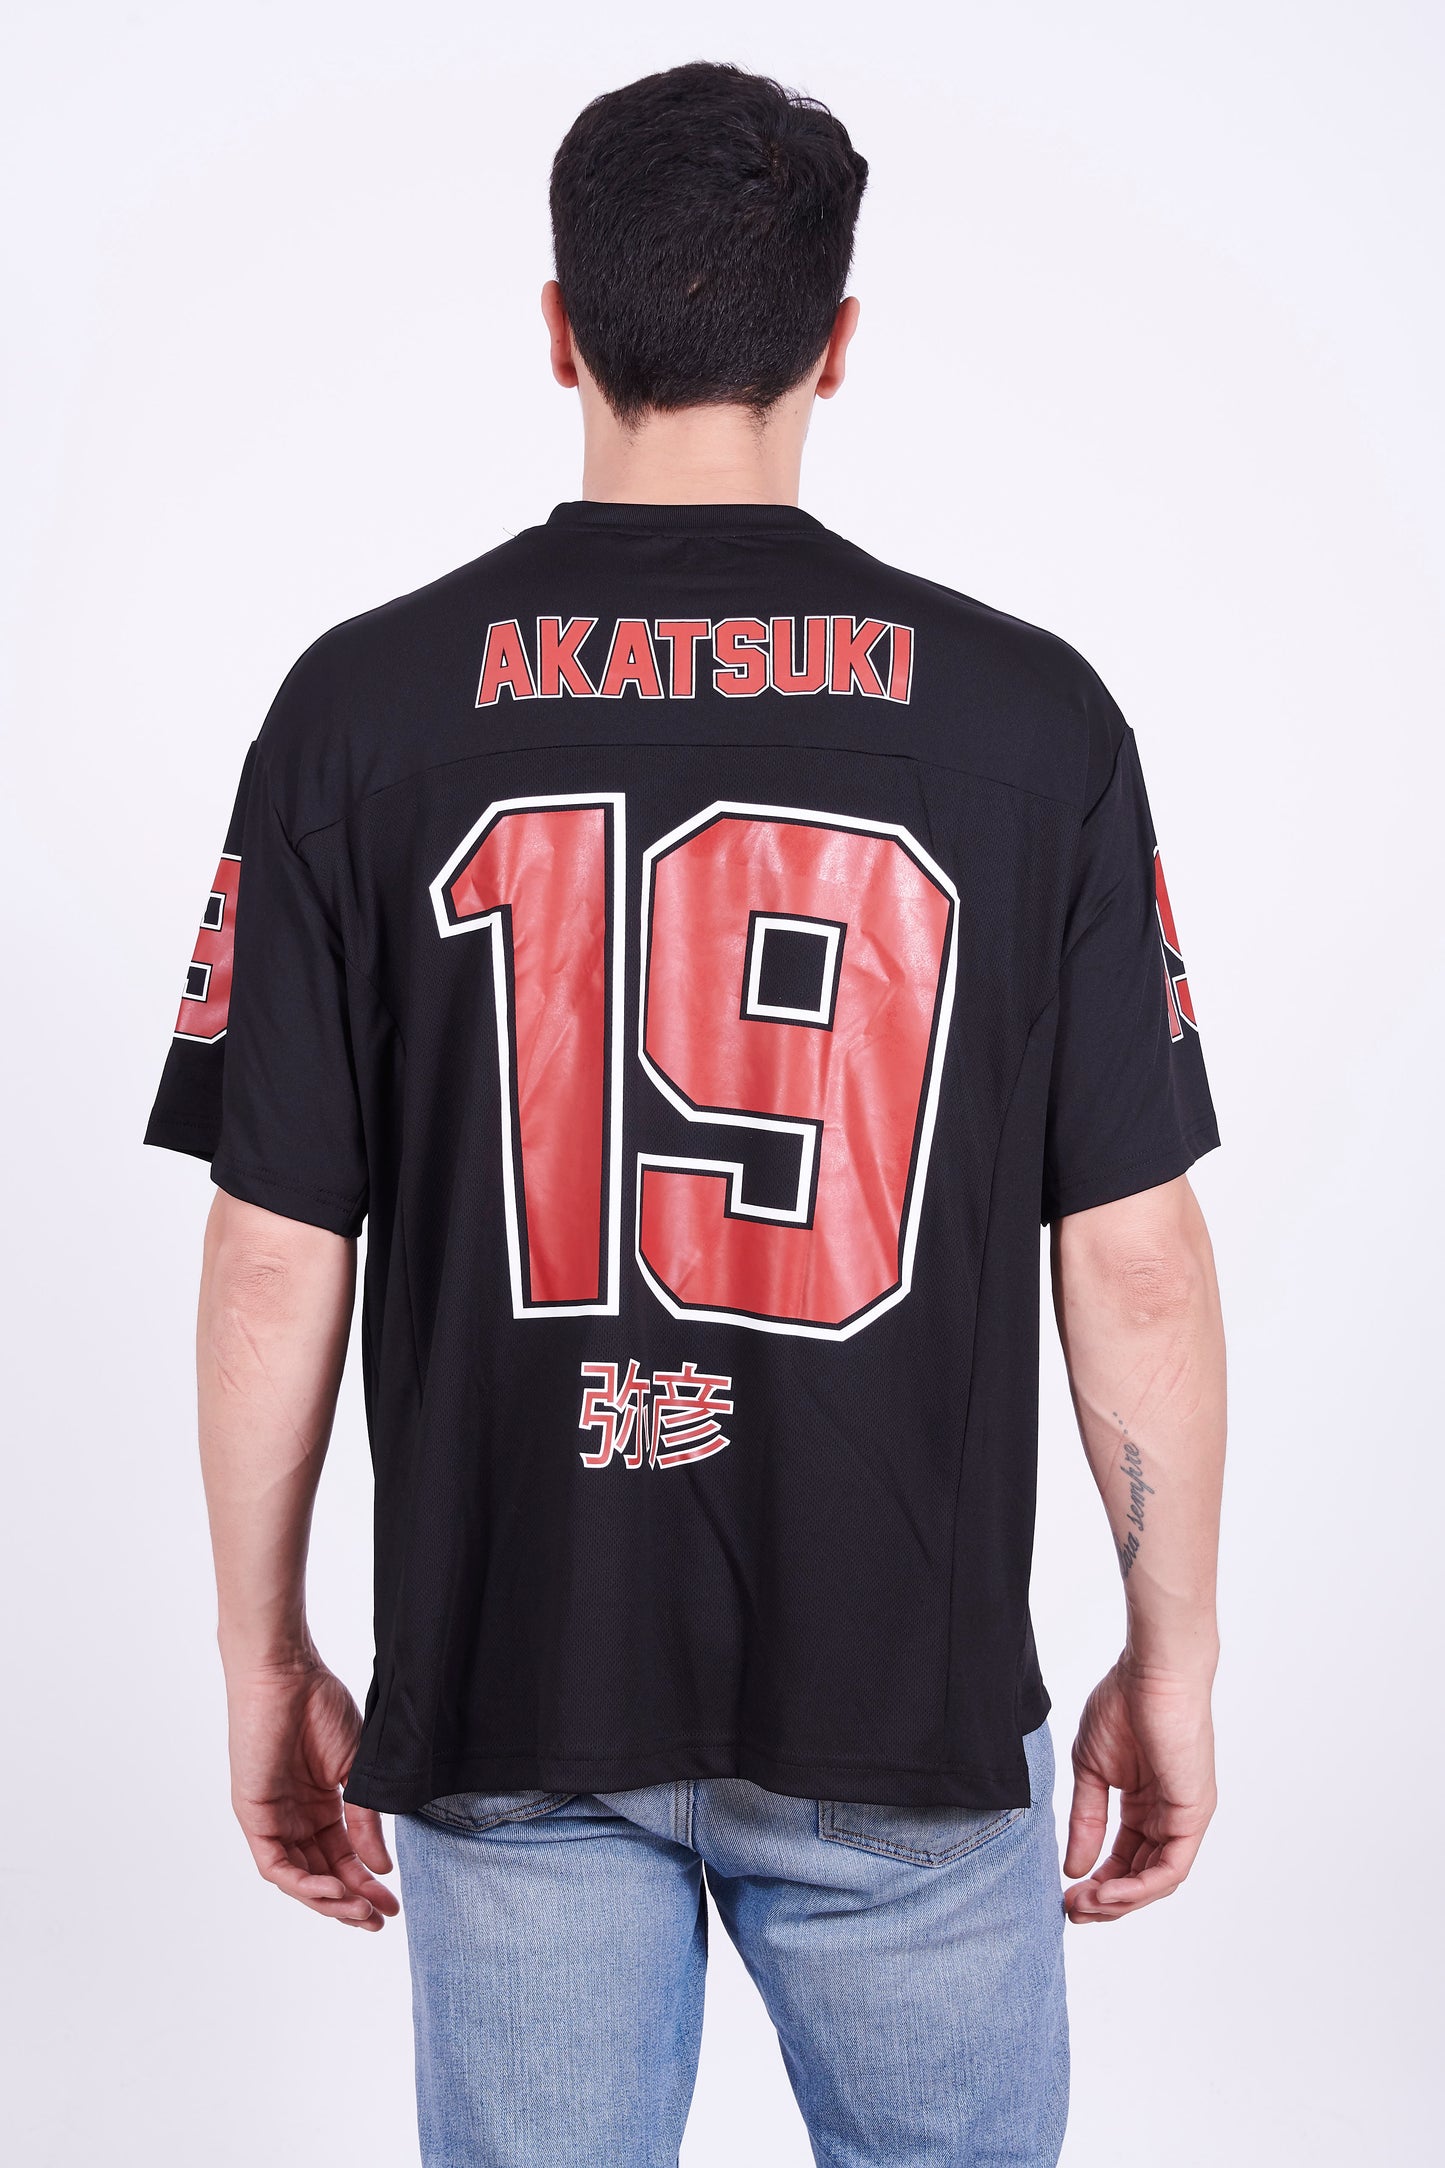 Naruto Sports T-shirt - Akatsuki 19